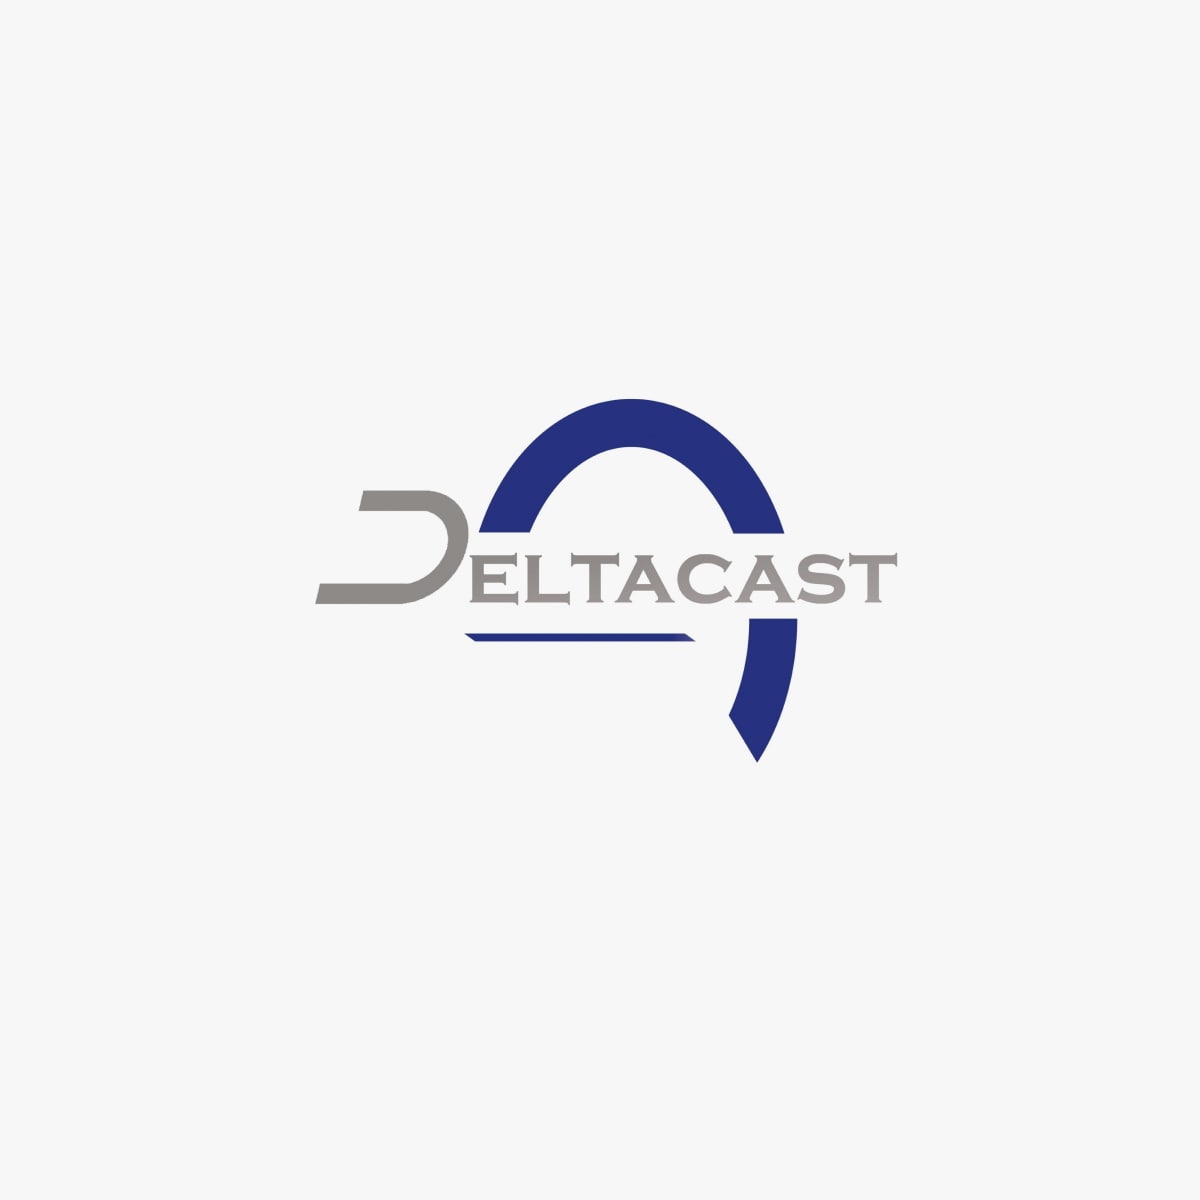 deltacast